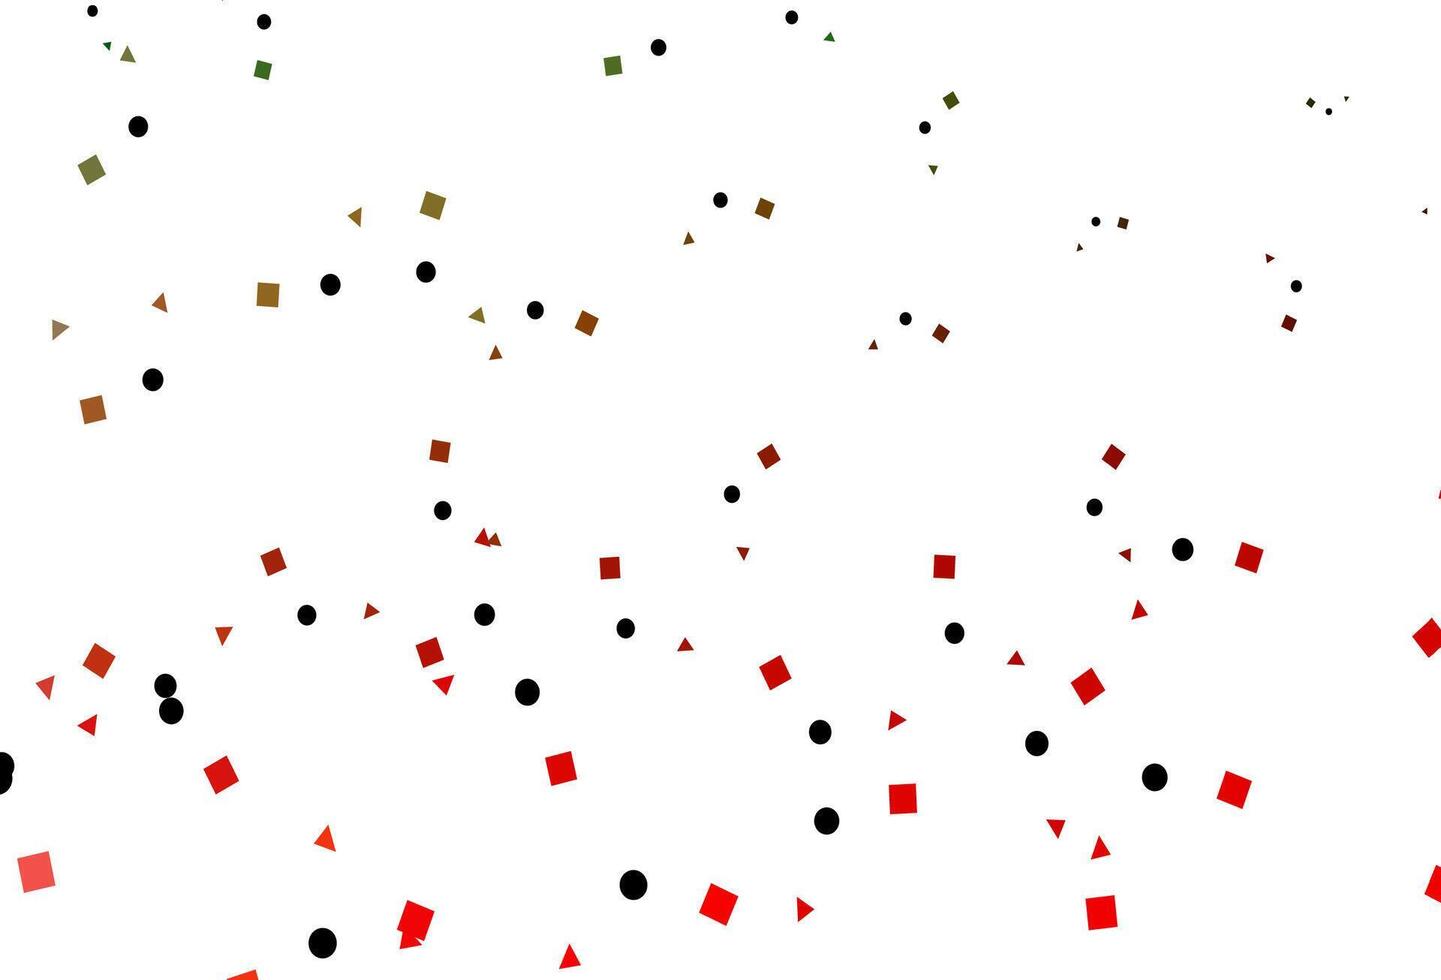 padrão de vetor verde e vermelho claro em estilo poligonal com círculos.